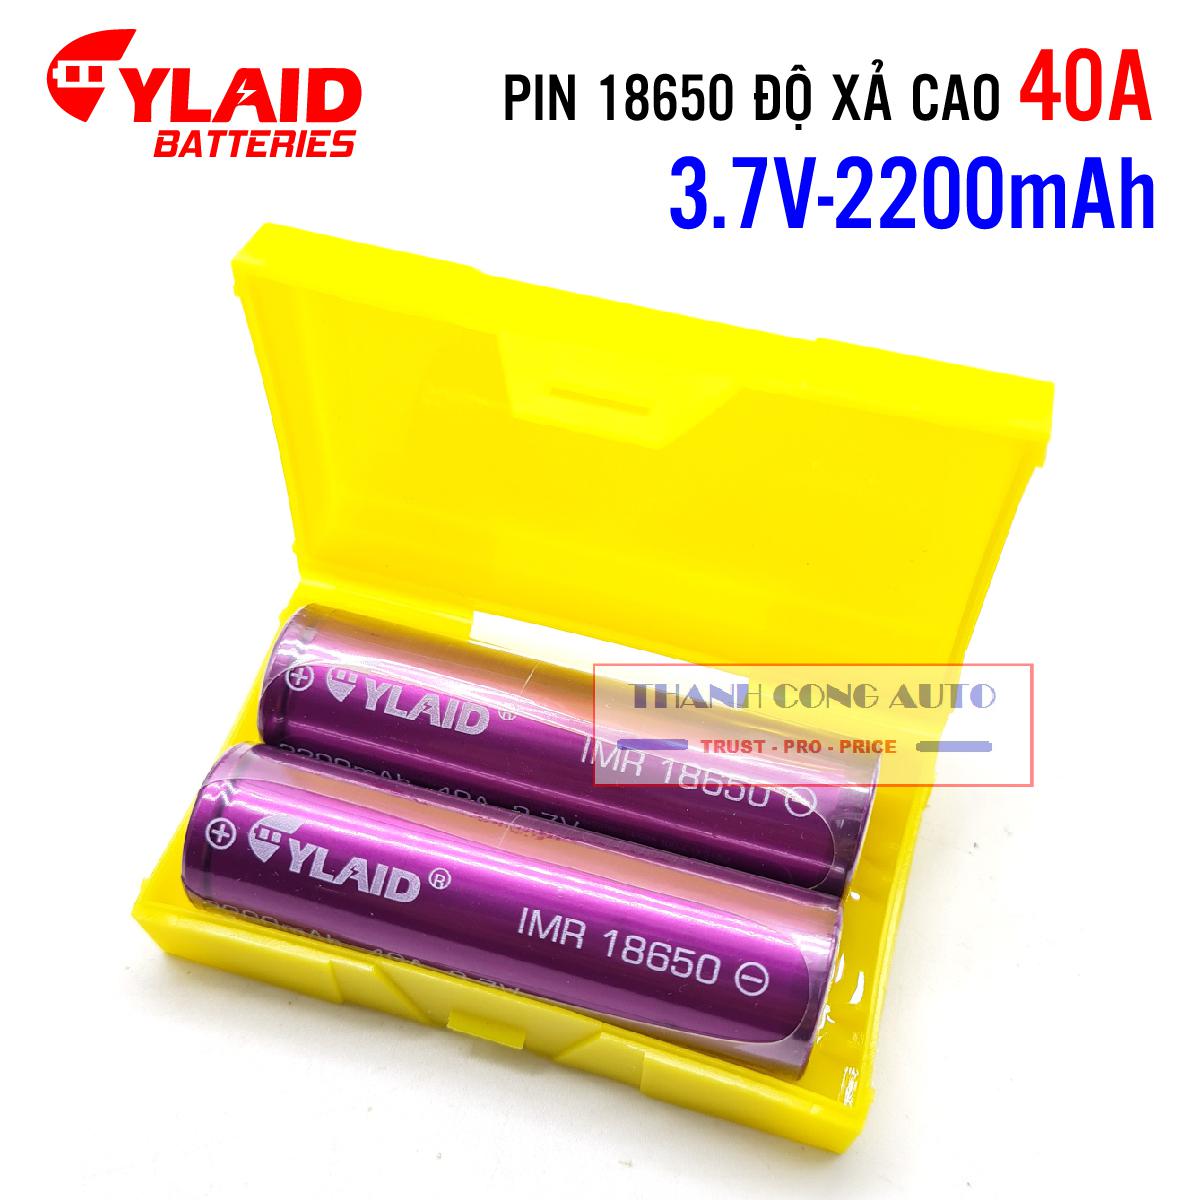 Cell Pin Cylaid 2200mah 40a 3,7v dòng xả cao mới 100%